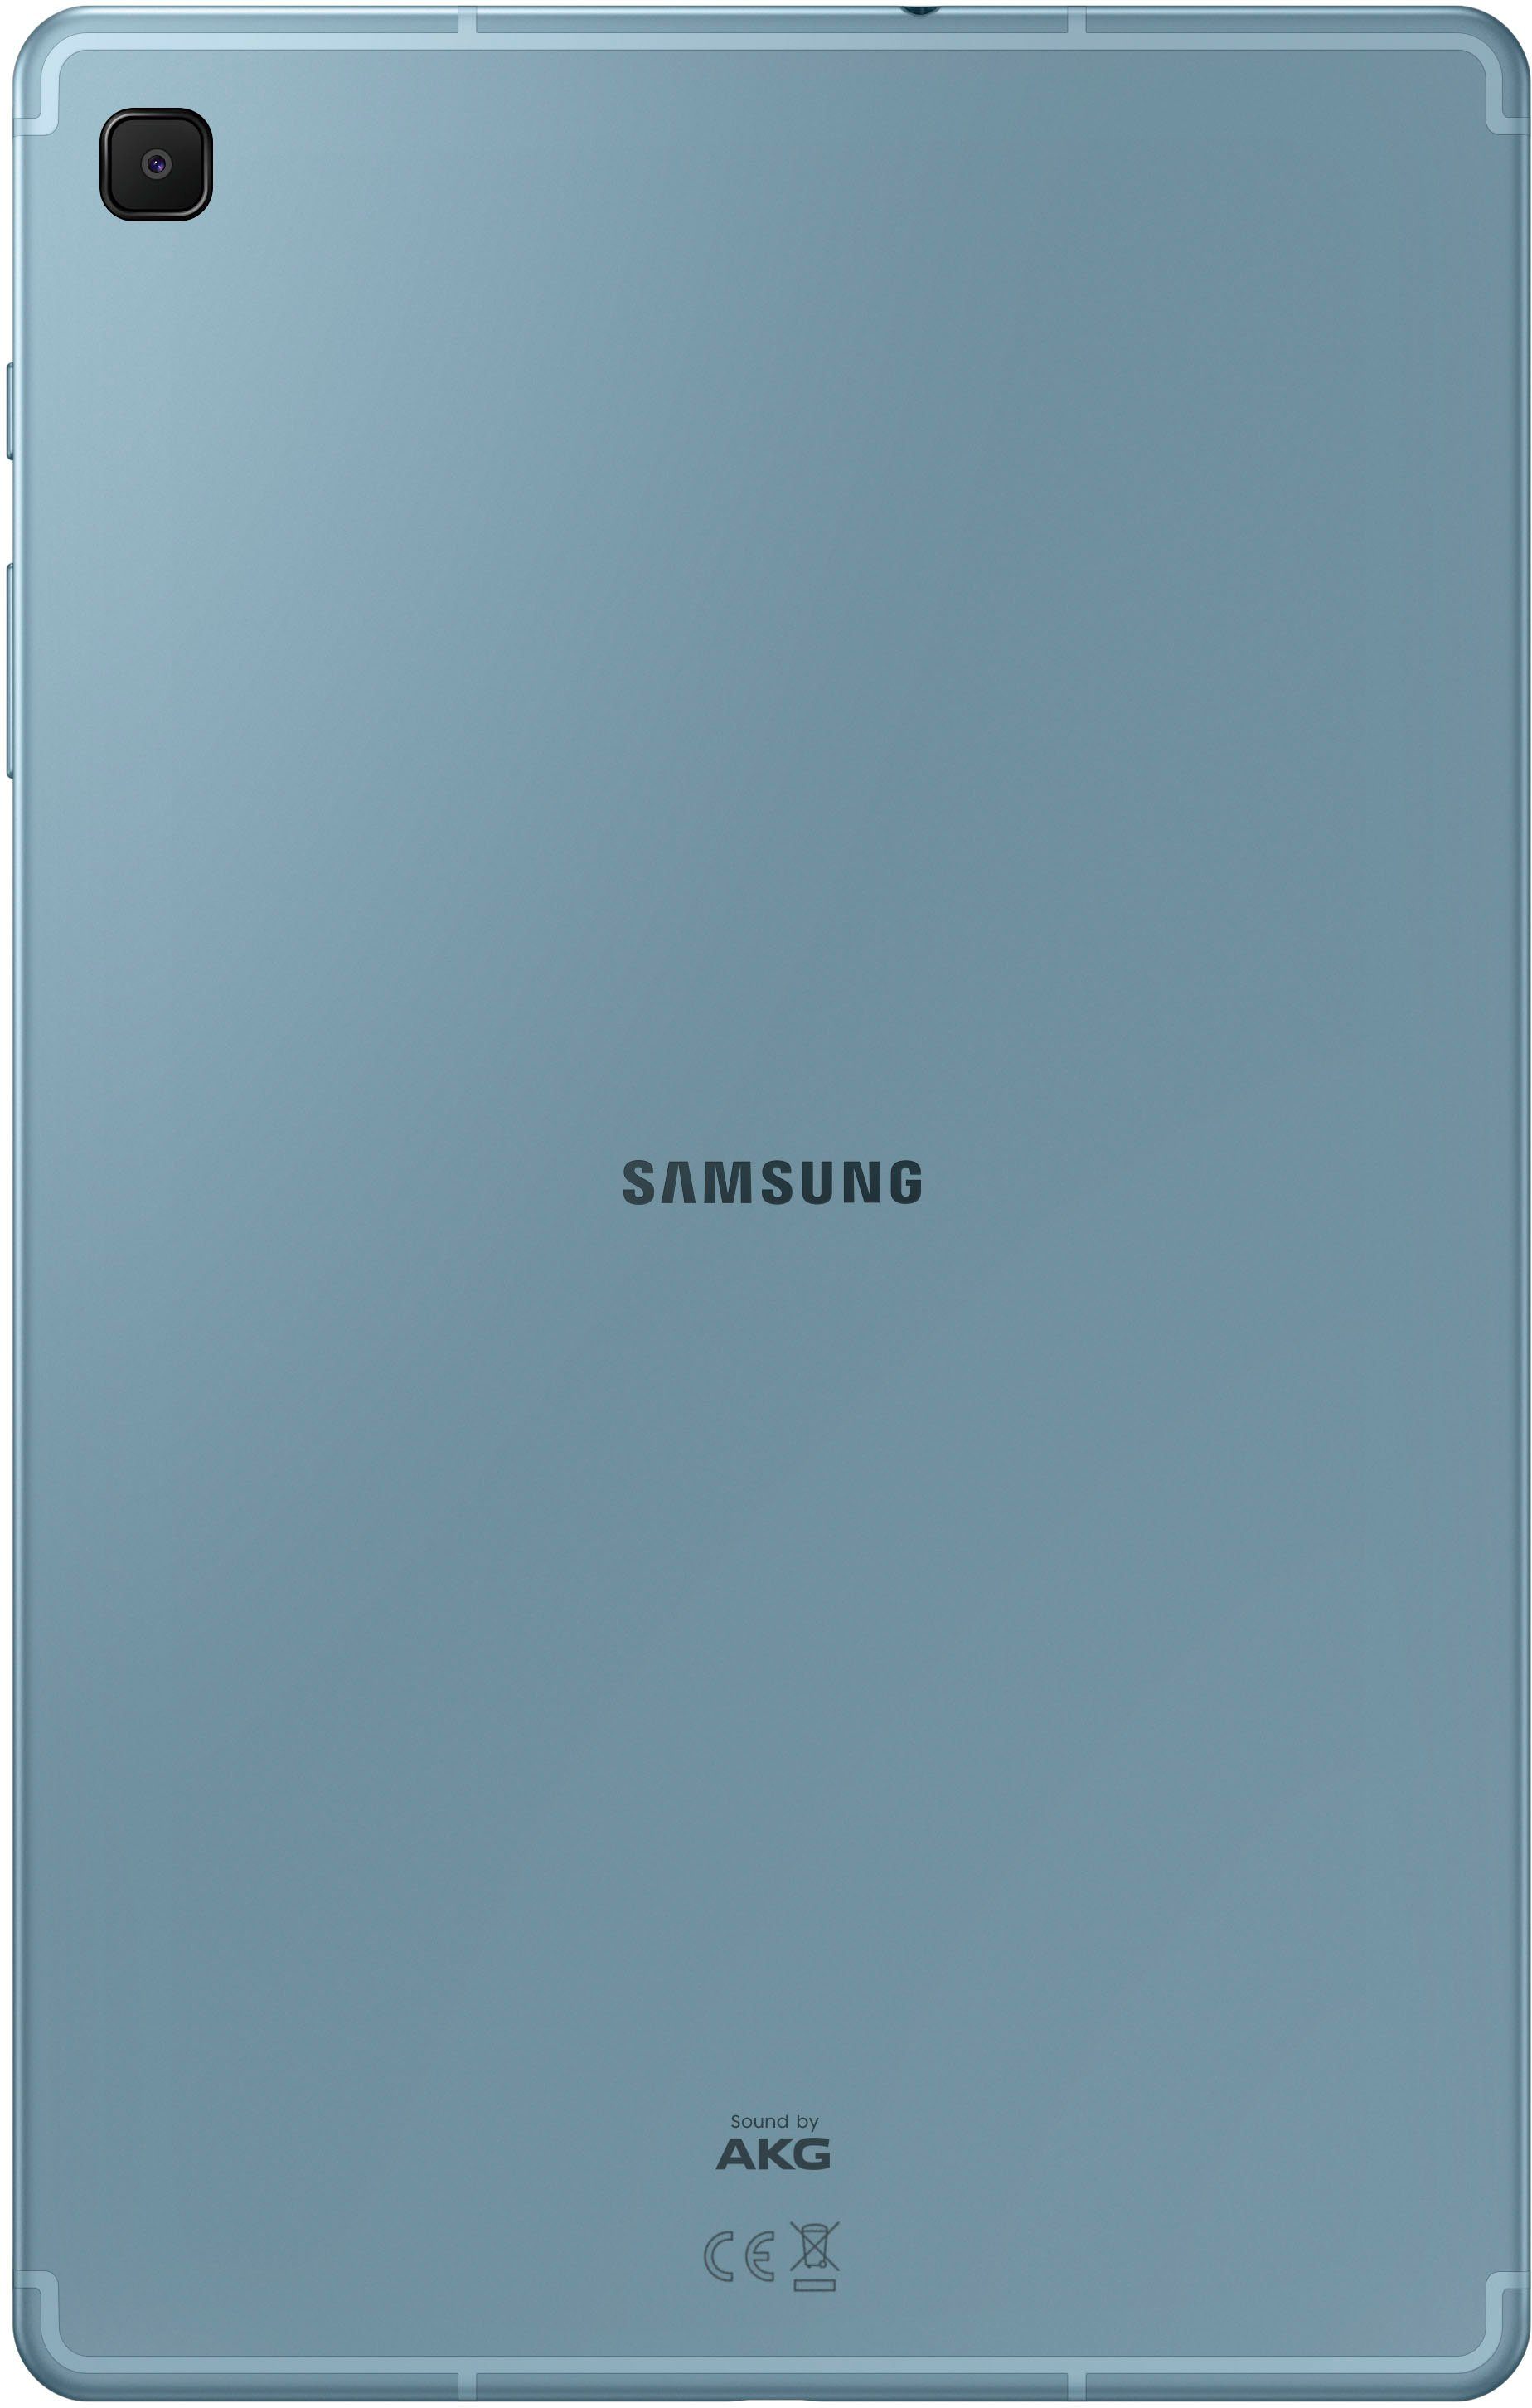 Lite Schule Ausbildung) Ideal Edition) Angora Wi-Fi für und Tablet Samsung Android, 64 Tab GB, Galaxy S6 Blue (10,4", (2022